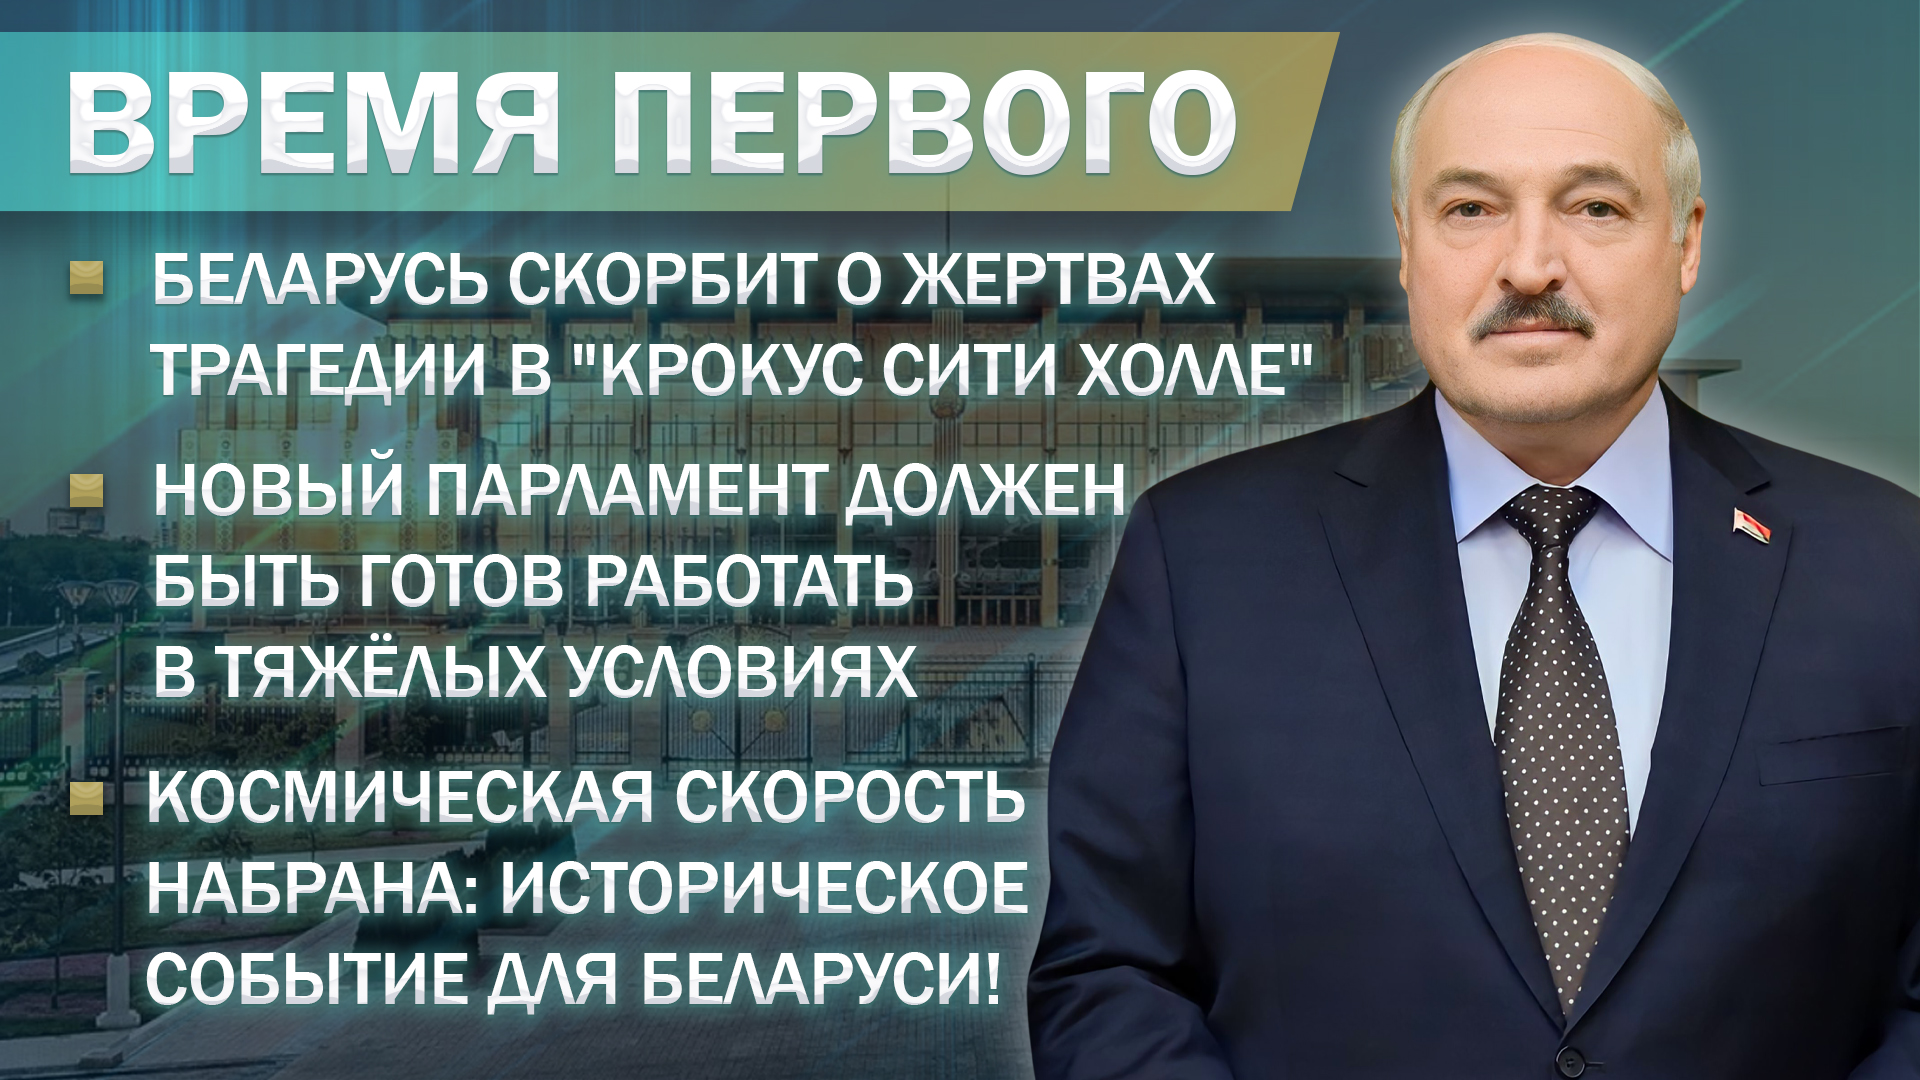 Время Первого: уникальные кадры, как прошла неделя Президента Беларуси. Главный эфир